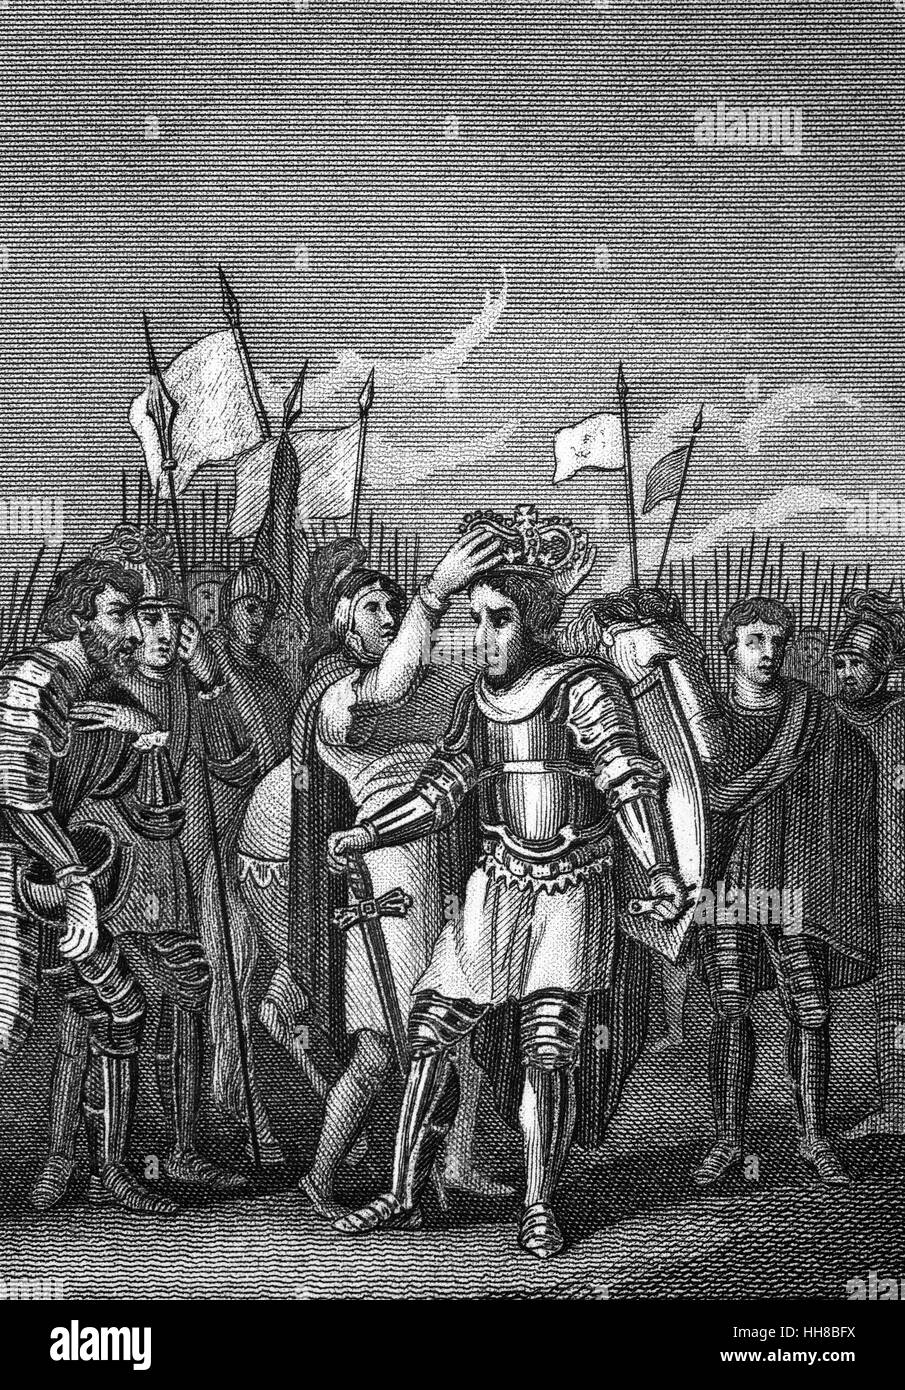 La coronación de Enrique VII (1457 - 1509) el 22 de agosto de 1485, tras la victoria en la batalla de Bosworth Field (o batalla de Bosworth), la última batalla importante de la Guerra de las rosas entre las casas de Lancaster y York, que tuvo lugar en Inglaterra en la segunda mitad del siglo XV. Foto de stock